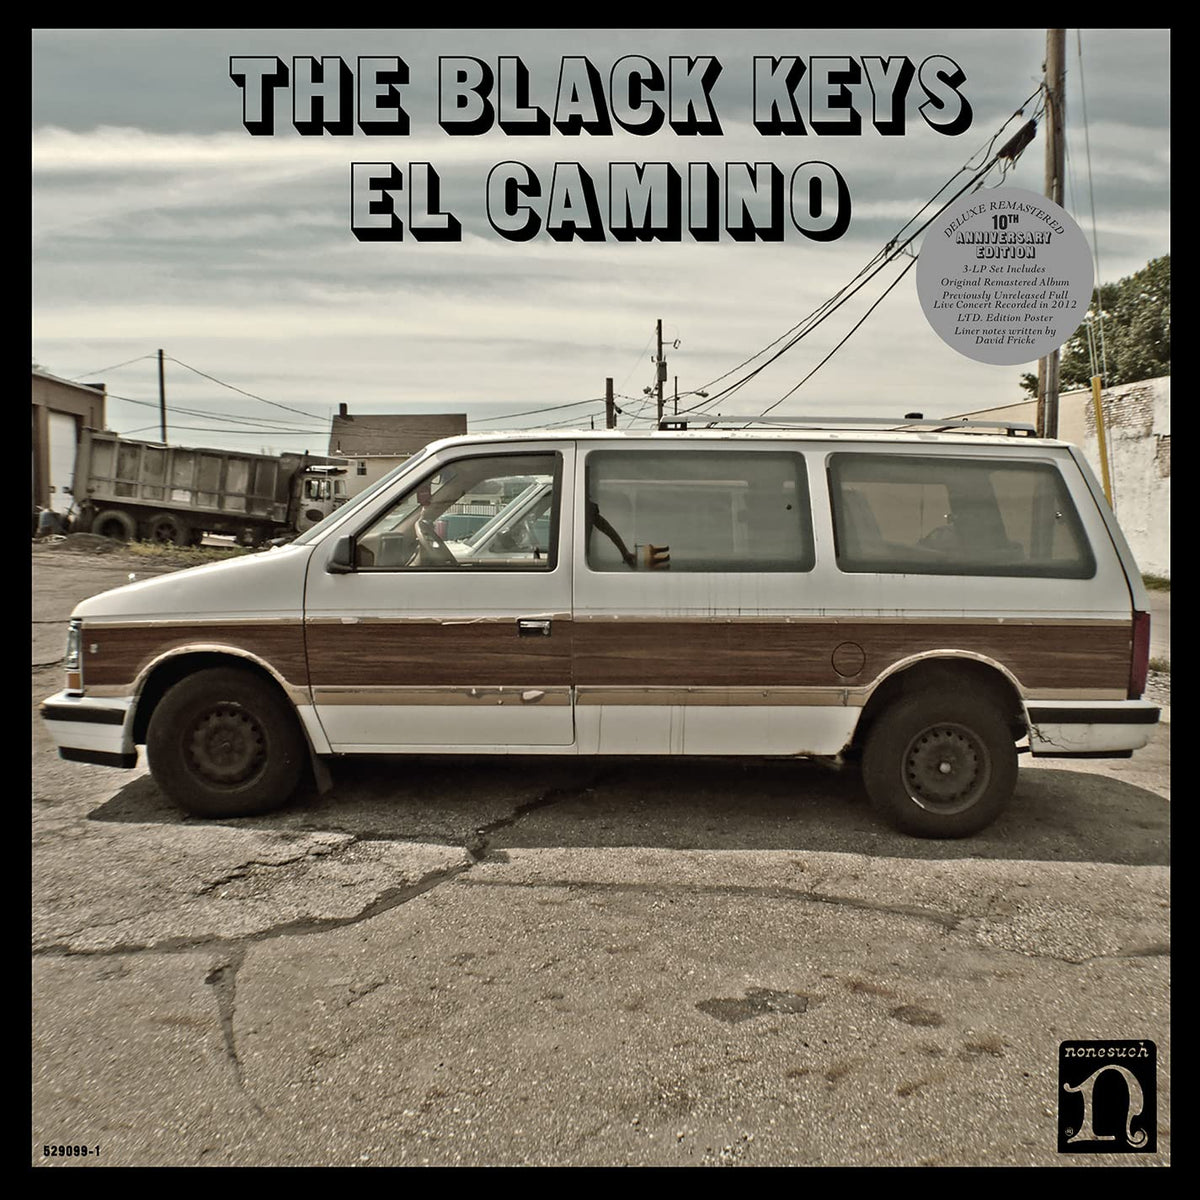 The Black Keys - El Camino 3LP (Deluxe 10th Anniversary Edition)